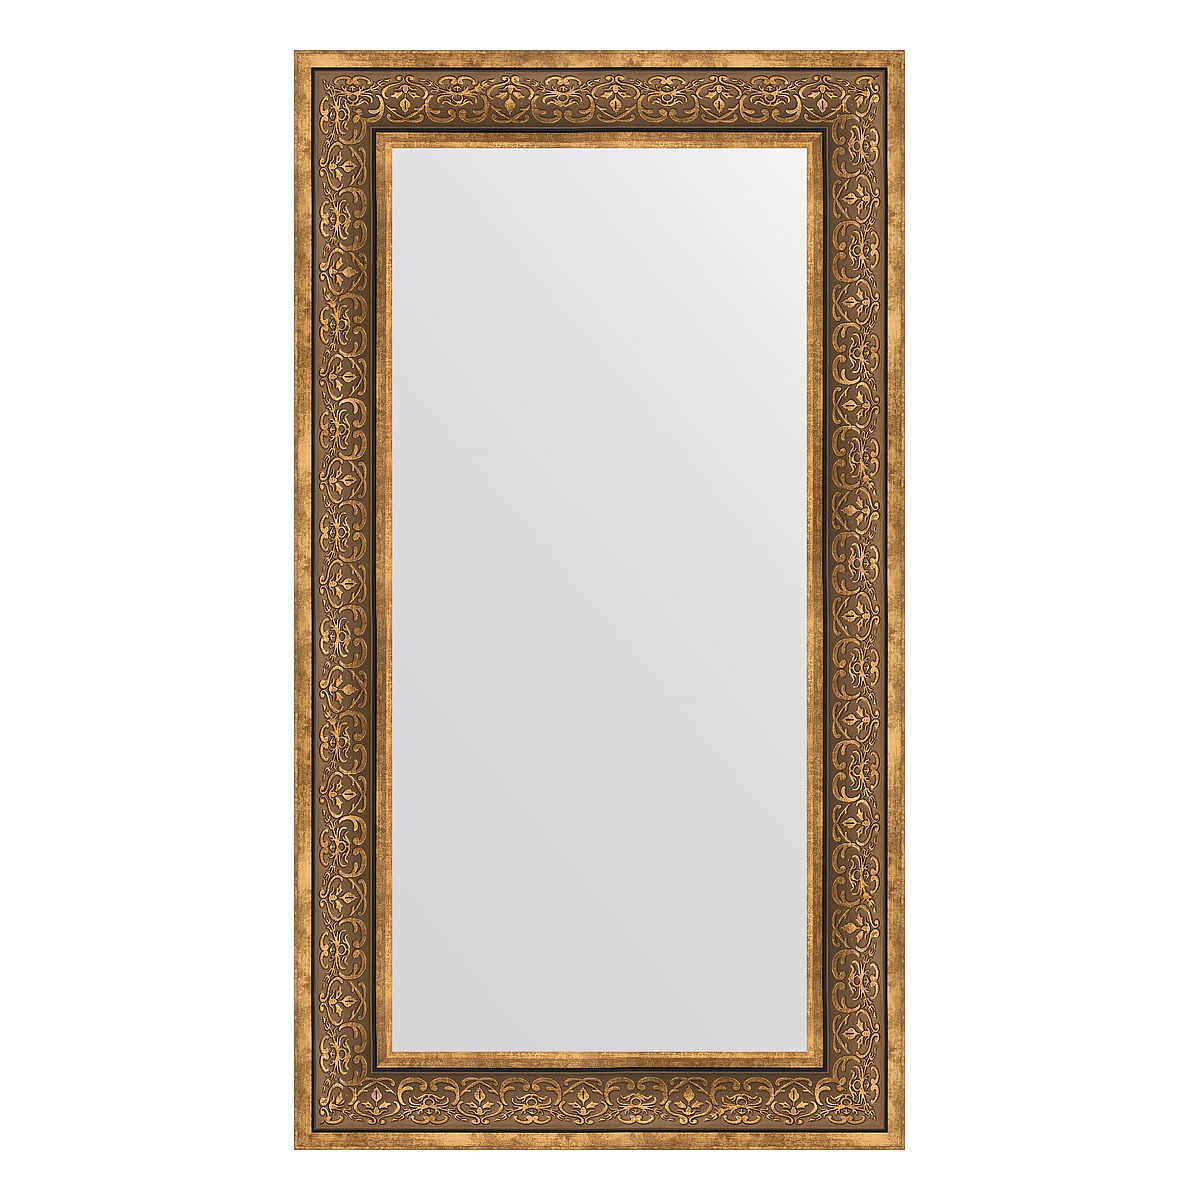 Зеркало в багетной раме Evoform вензель бронзовый 101 мм 63х113 см зеркало 79х109 см вензель бронзовый evoform exclusive by 3474